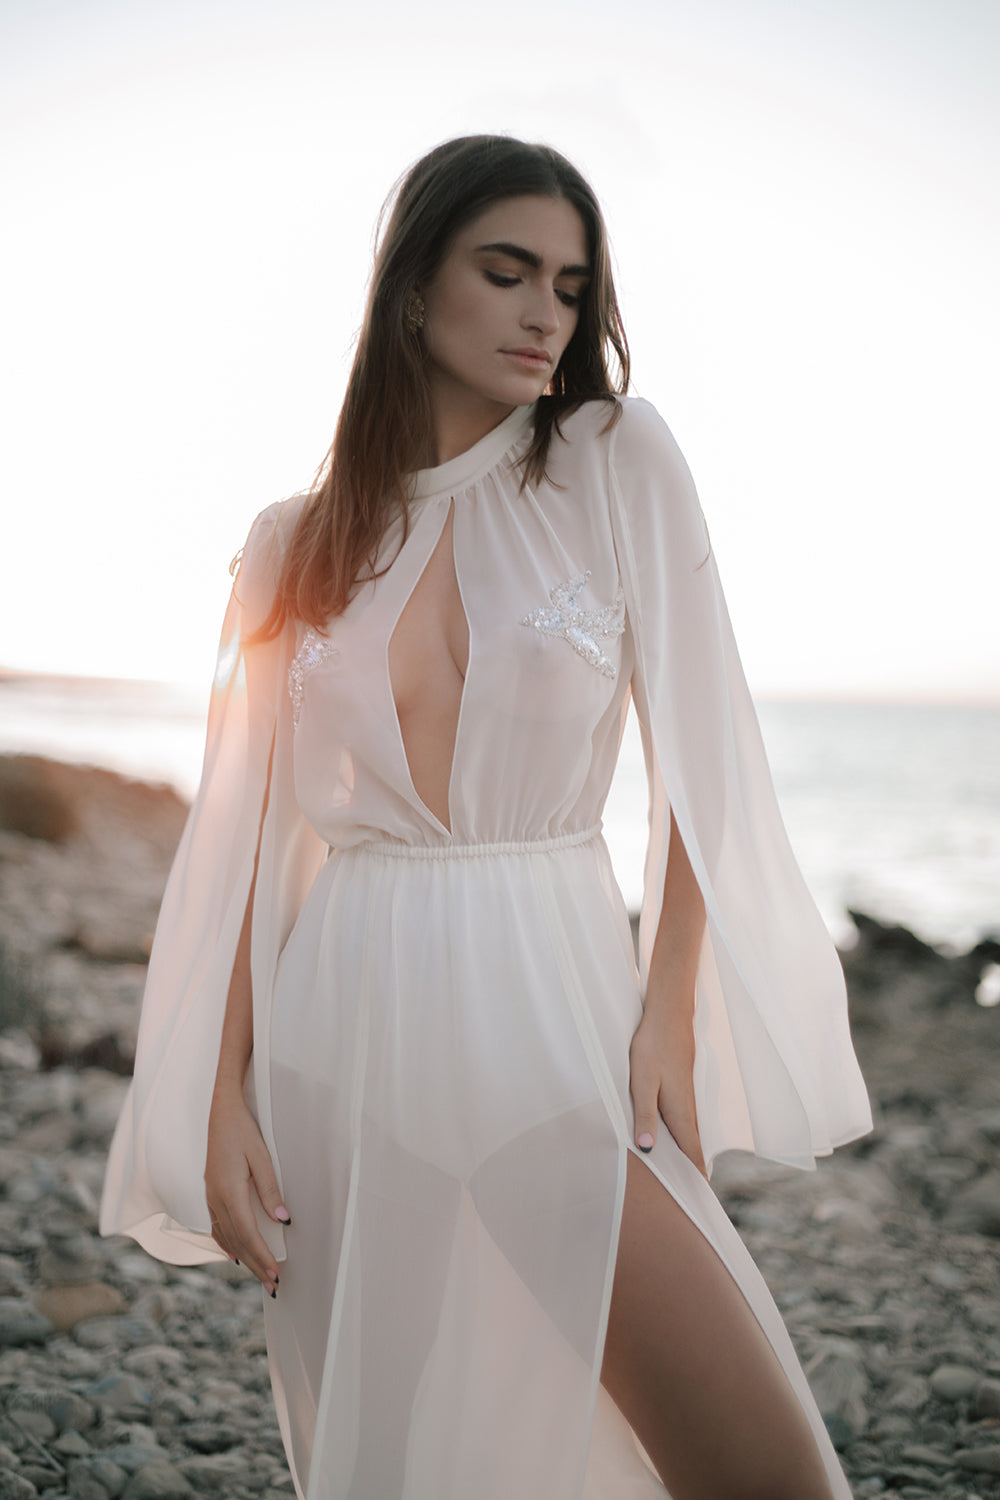 Redondo beach white dress